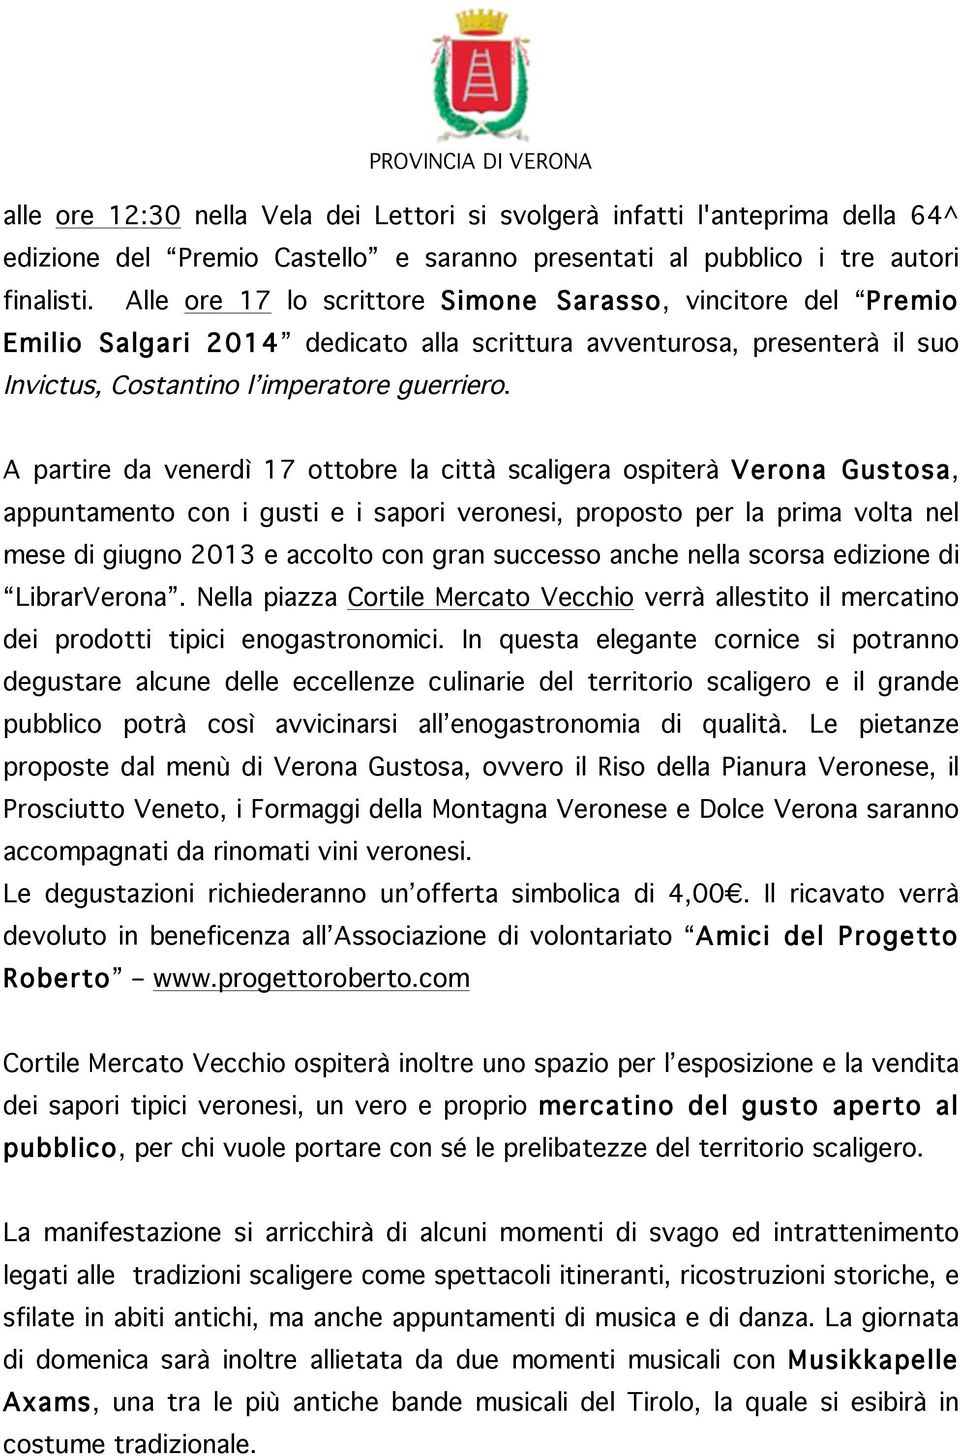 A partire da venerdì 17 ottobre la città scaligera ospiterà Verona Gustosa, appuntamento con i gusti e i sapori veronesi, proposto per la prima volta nel mese di giugno 2013 e accolto con gran